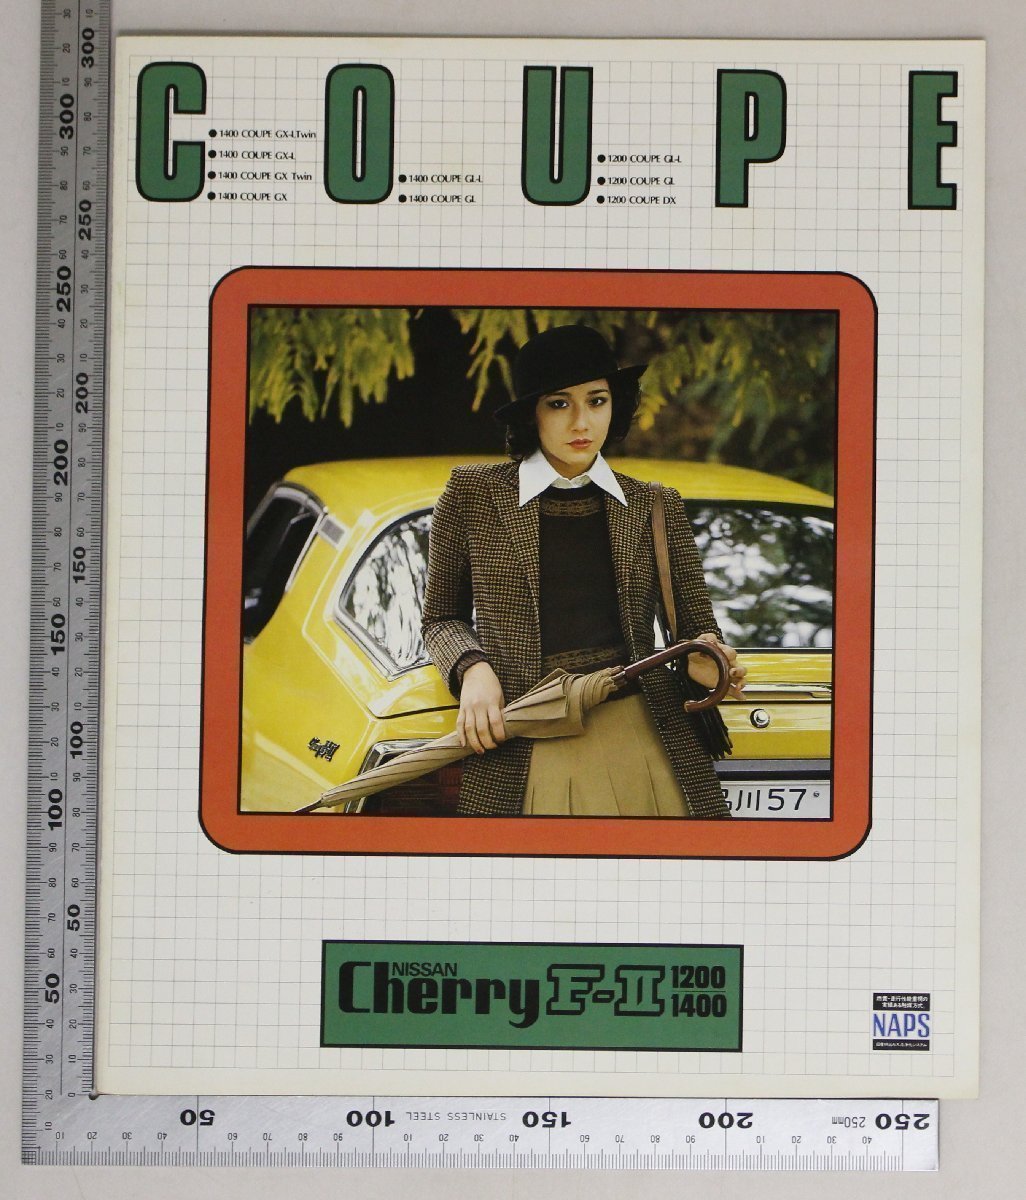 自動車カタログ『COUPE NISSAN CherryF-II 1200・1400』1977年頃 日産自動車 補足:ニッサン黄色いチェリーF-2クーペスポーツマチック_画像1